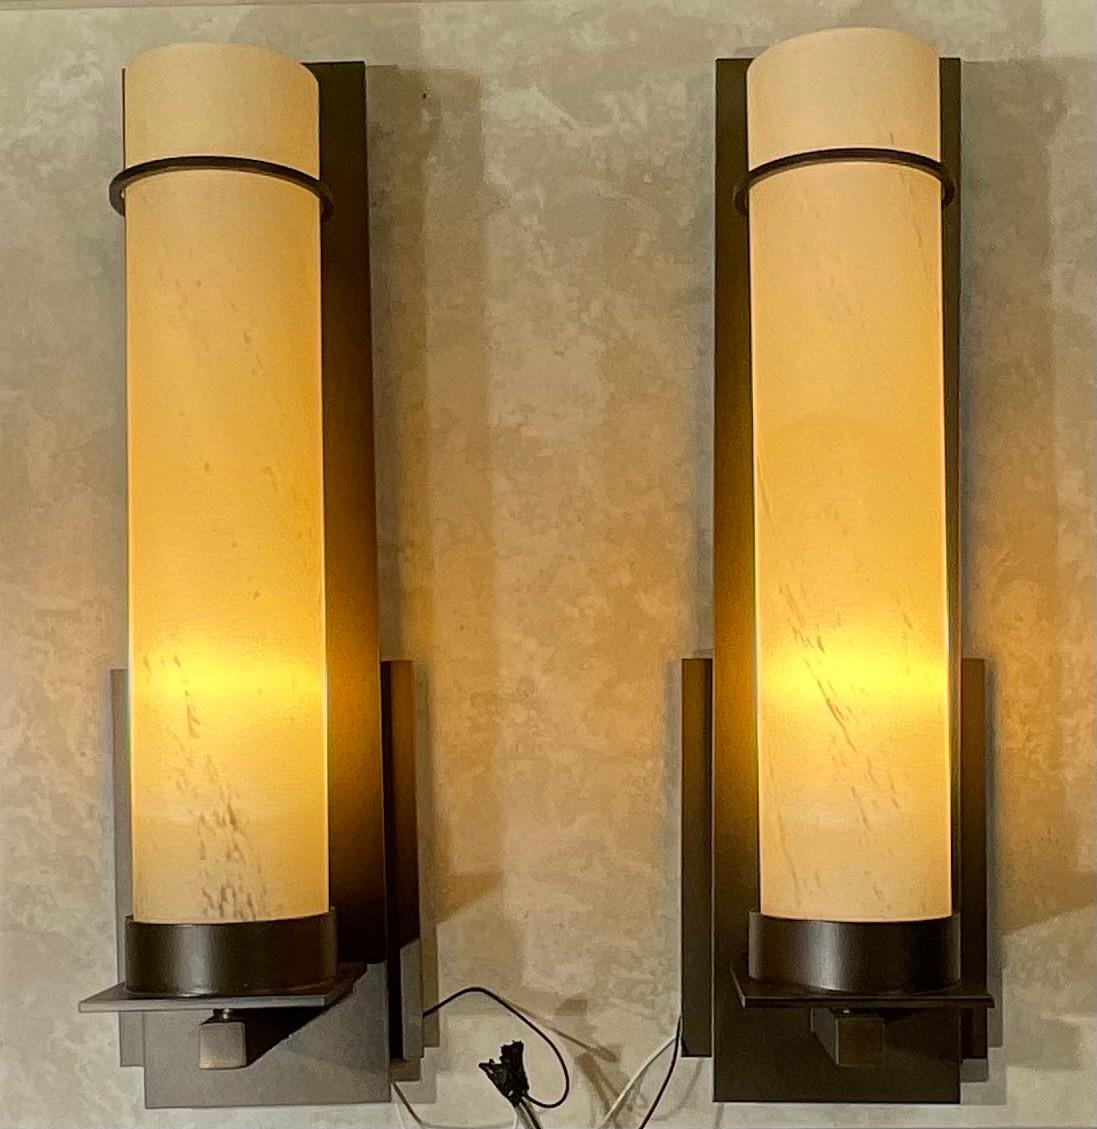 Wunderschönes Paar Nachttischlampen aus gebogenem Metall in dunkler Rauchoptik, mit langer schmaler Kunstglasröhre in Marmoroptik. Jeweils eine 60-Watt-Lampe, die für visuelles Interesse sorgt.
Hergestellt in den USA

ULCUL gelistet 